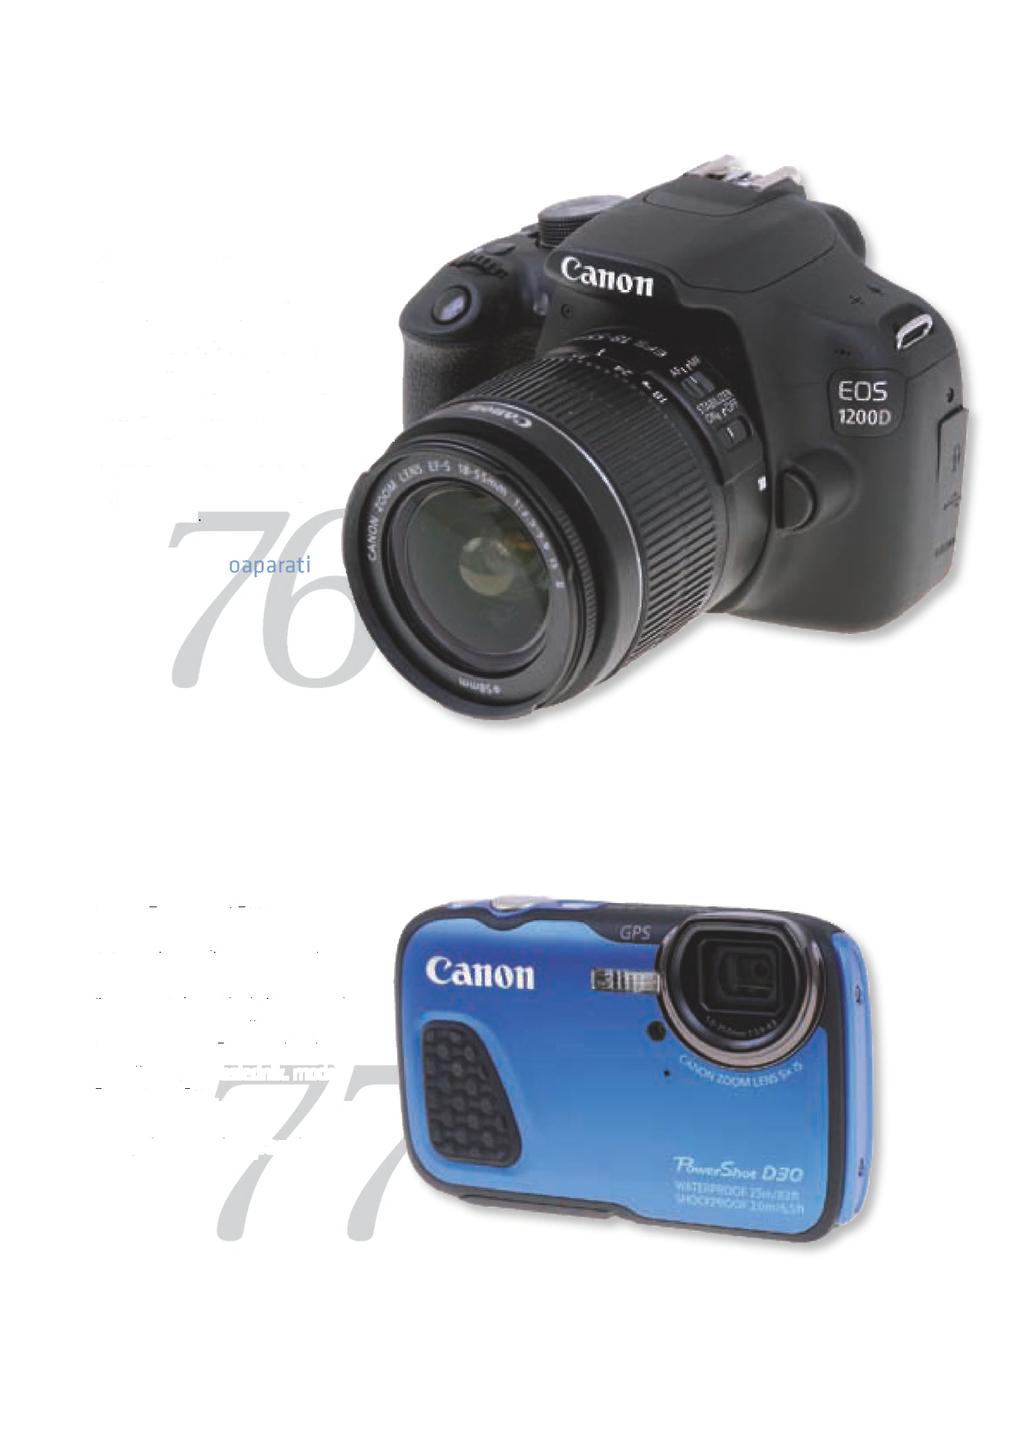 Canon EOS 1200D Canon je v svoji liniji DSLR zamenjal tisto, kar je sodilo na rep ponudbe, aparat EOS 1100D - plastični izdelek z nič kaj prepričljivimi